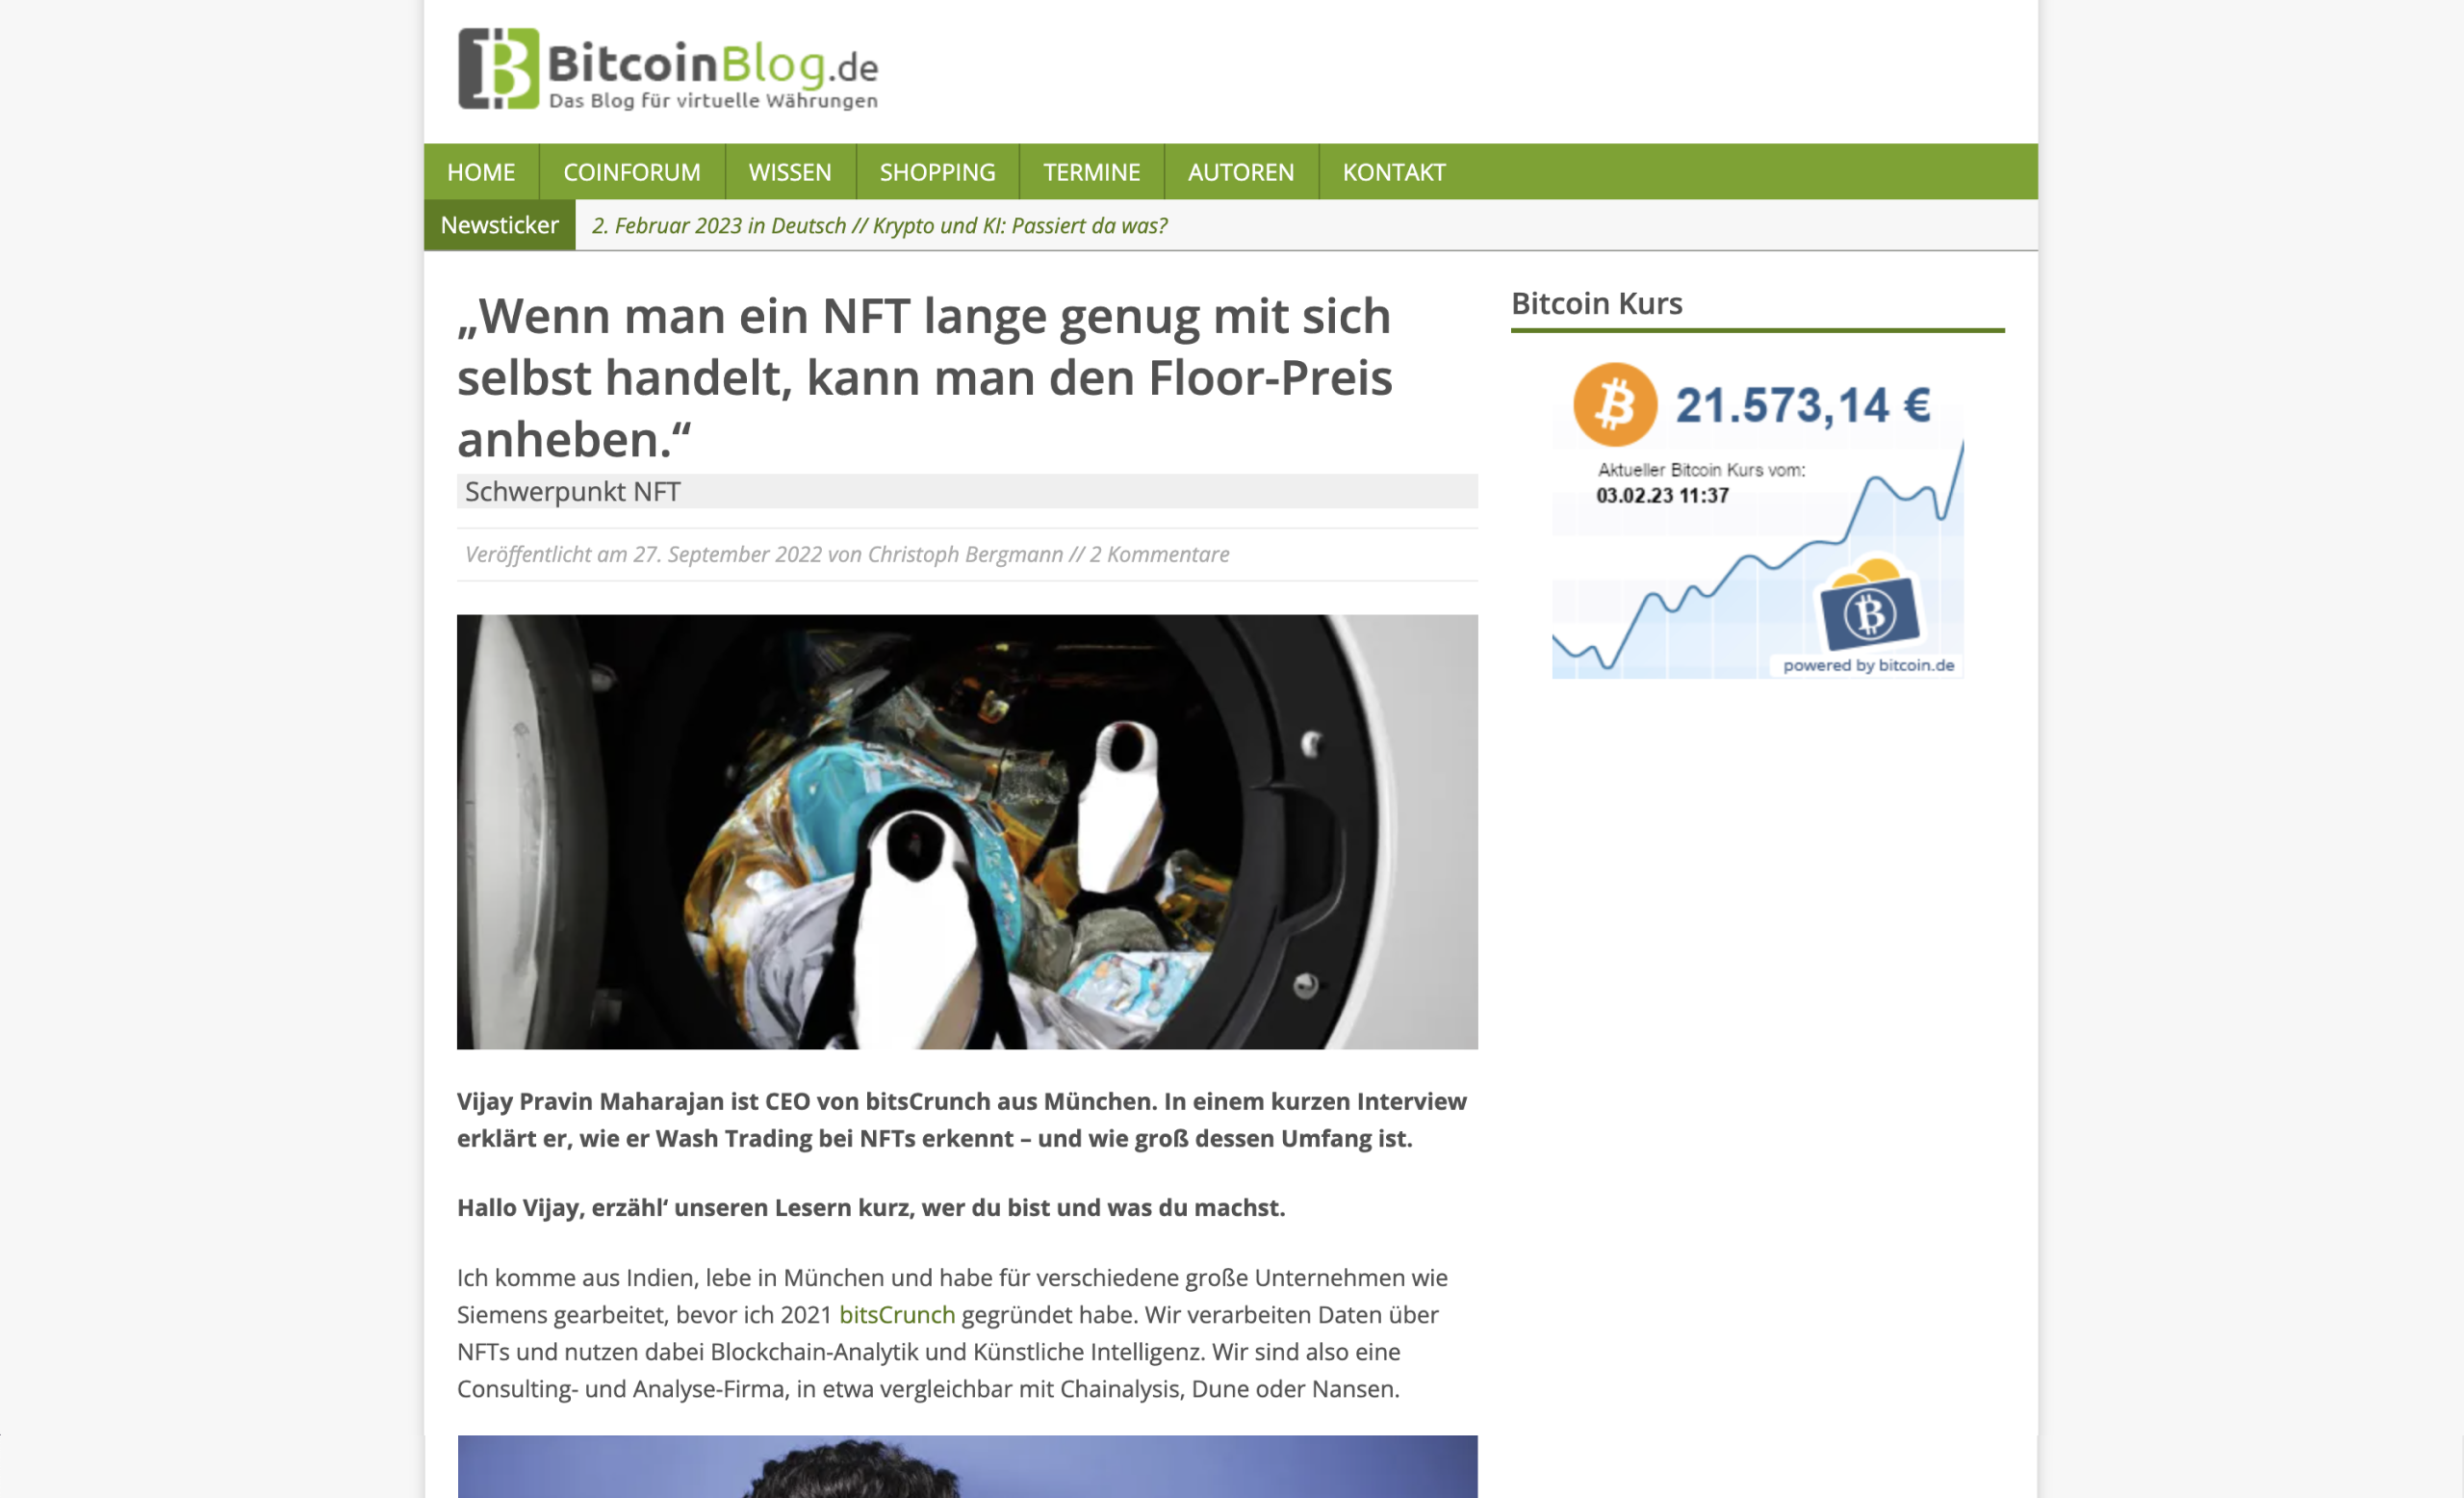 Image for BitcoinBlog.de publicity item